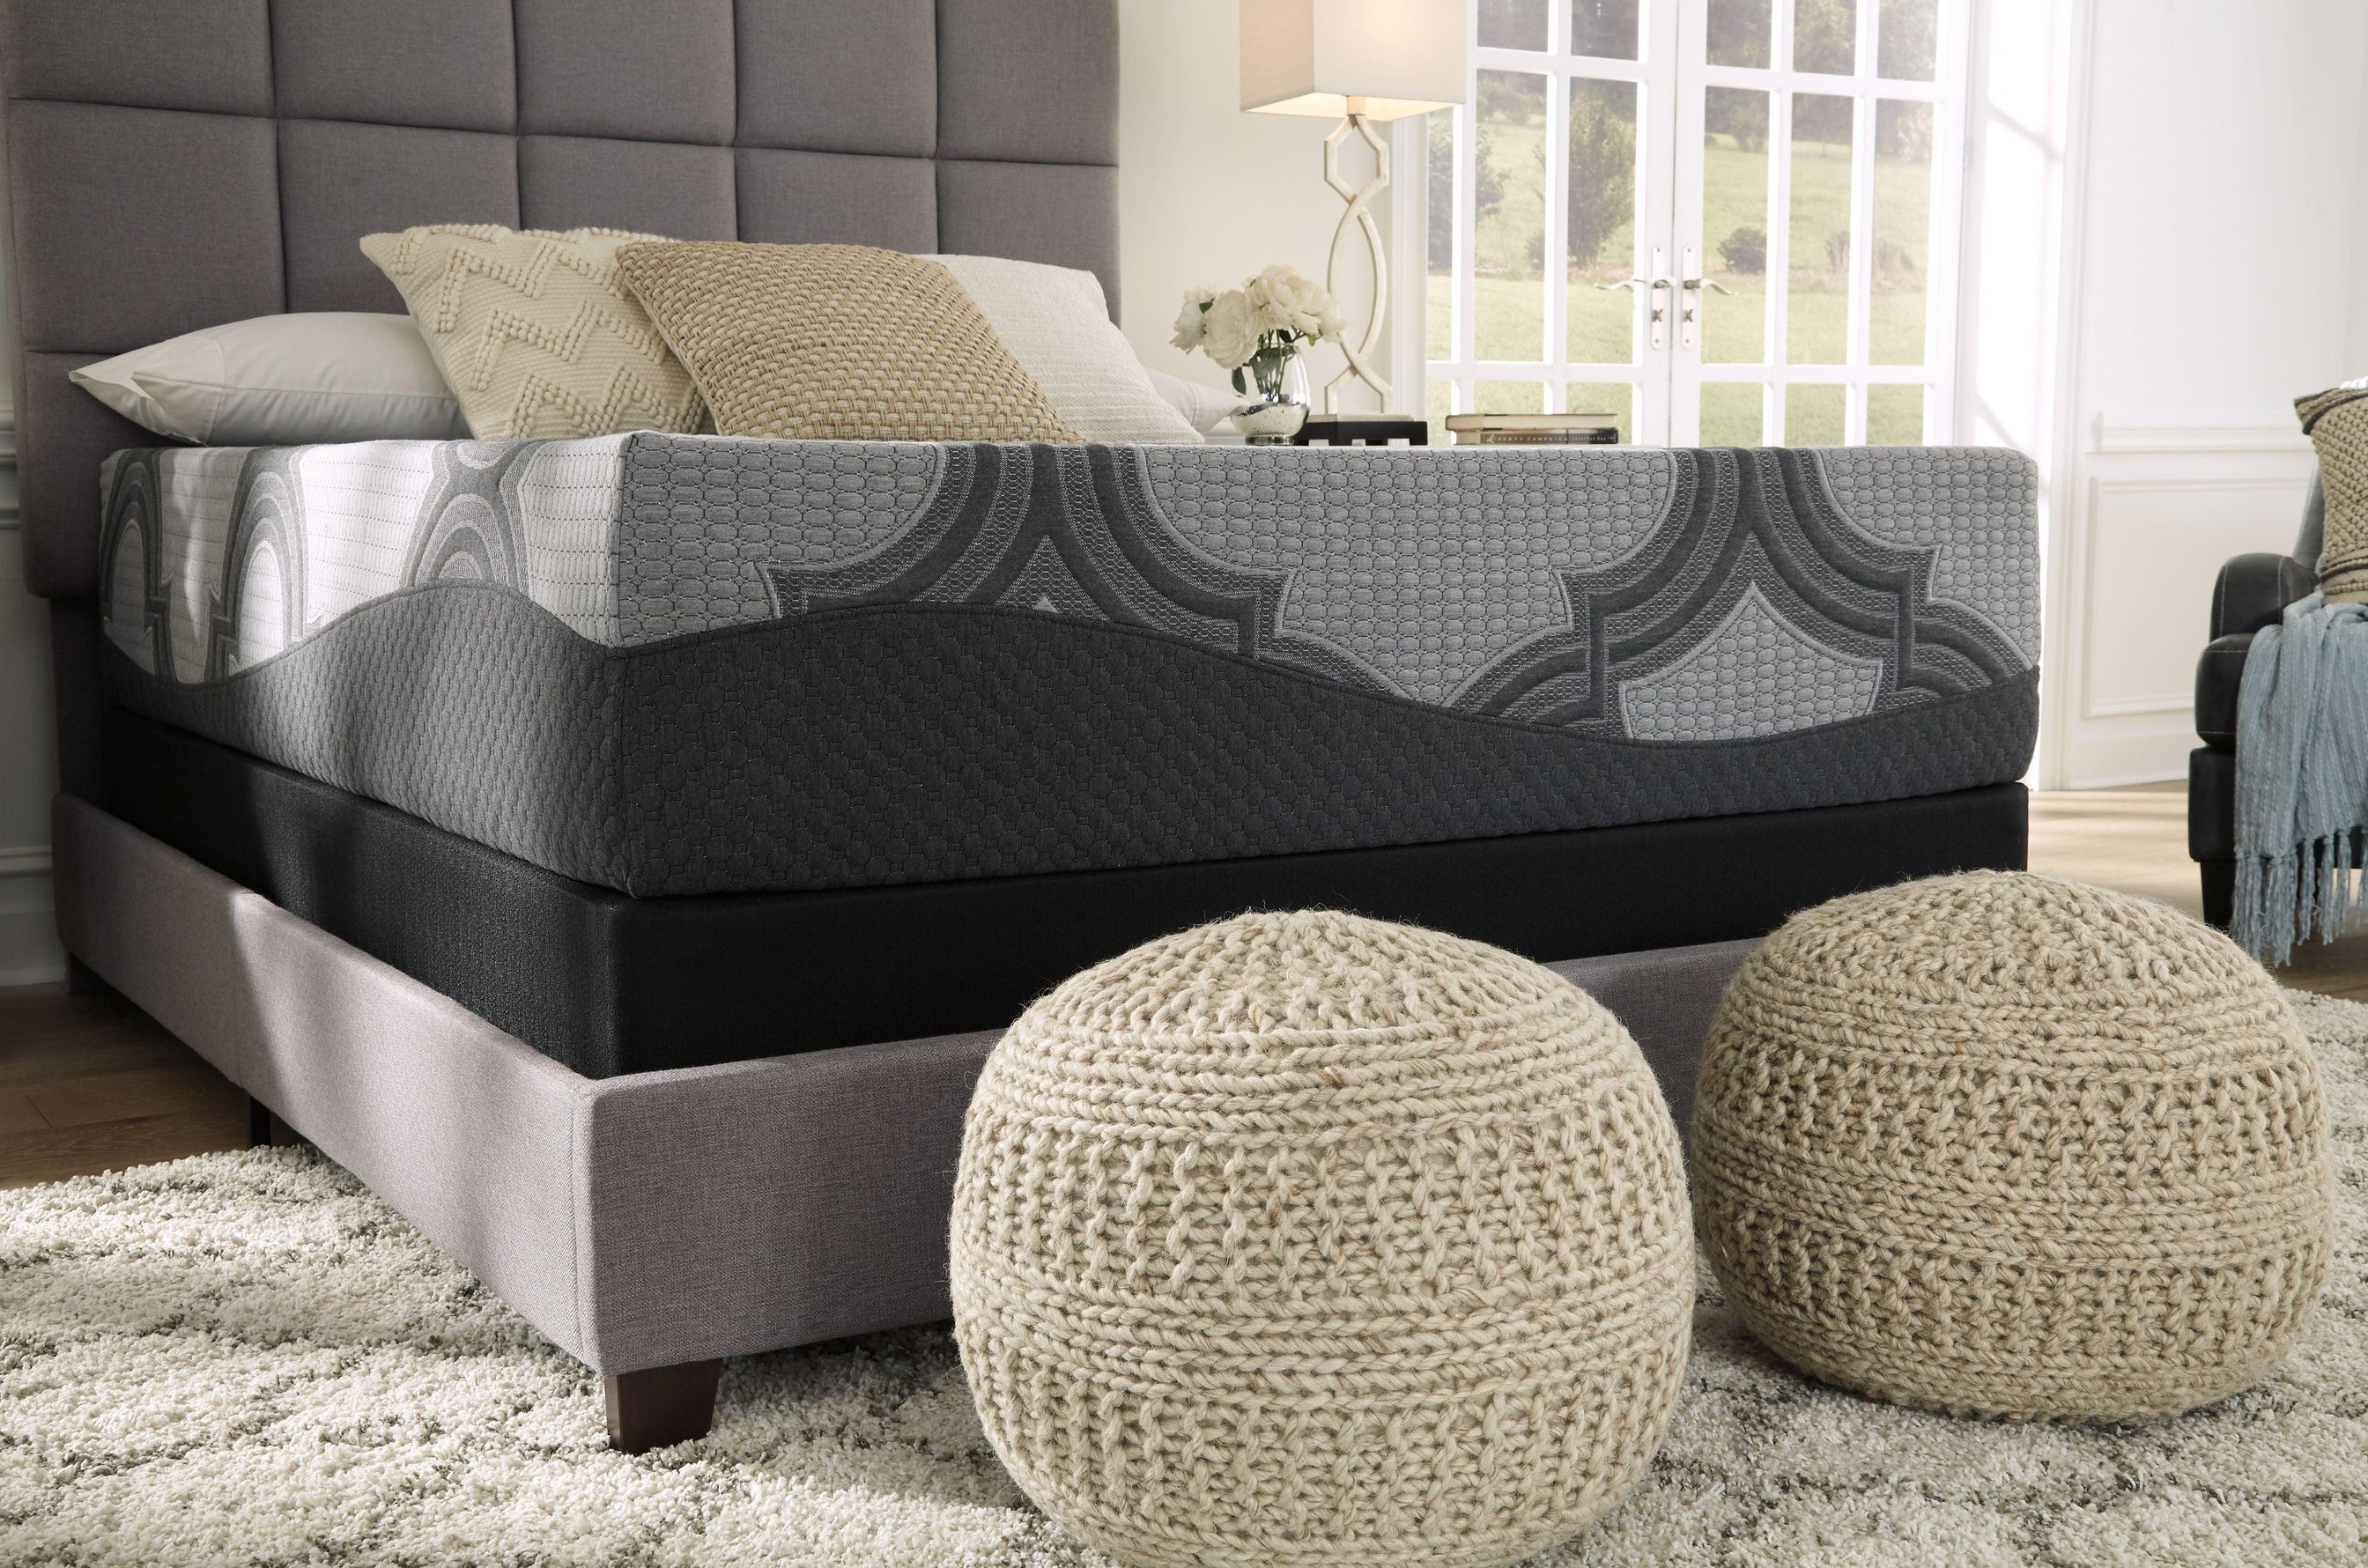 Ashley Sleep® - 1100 Series - Firm Mattress - 5th Avenue Furniture